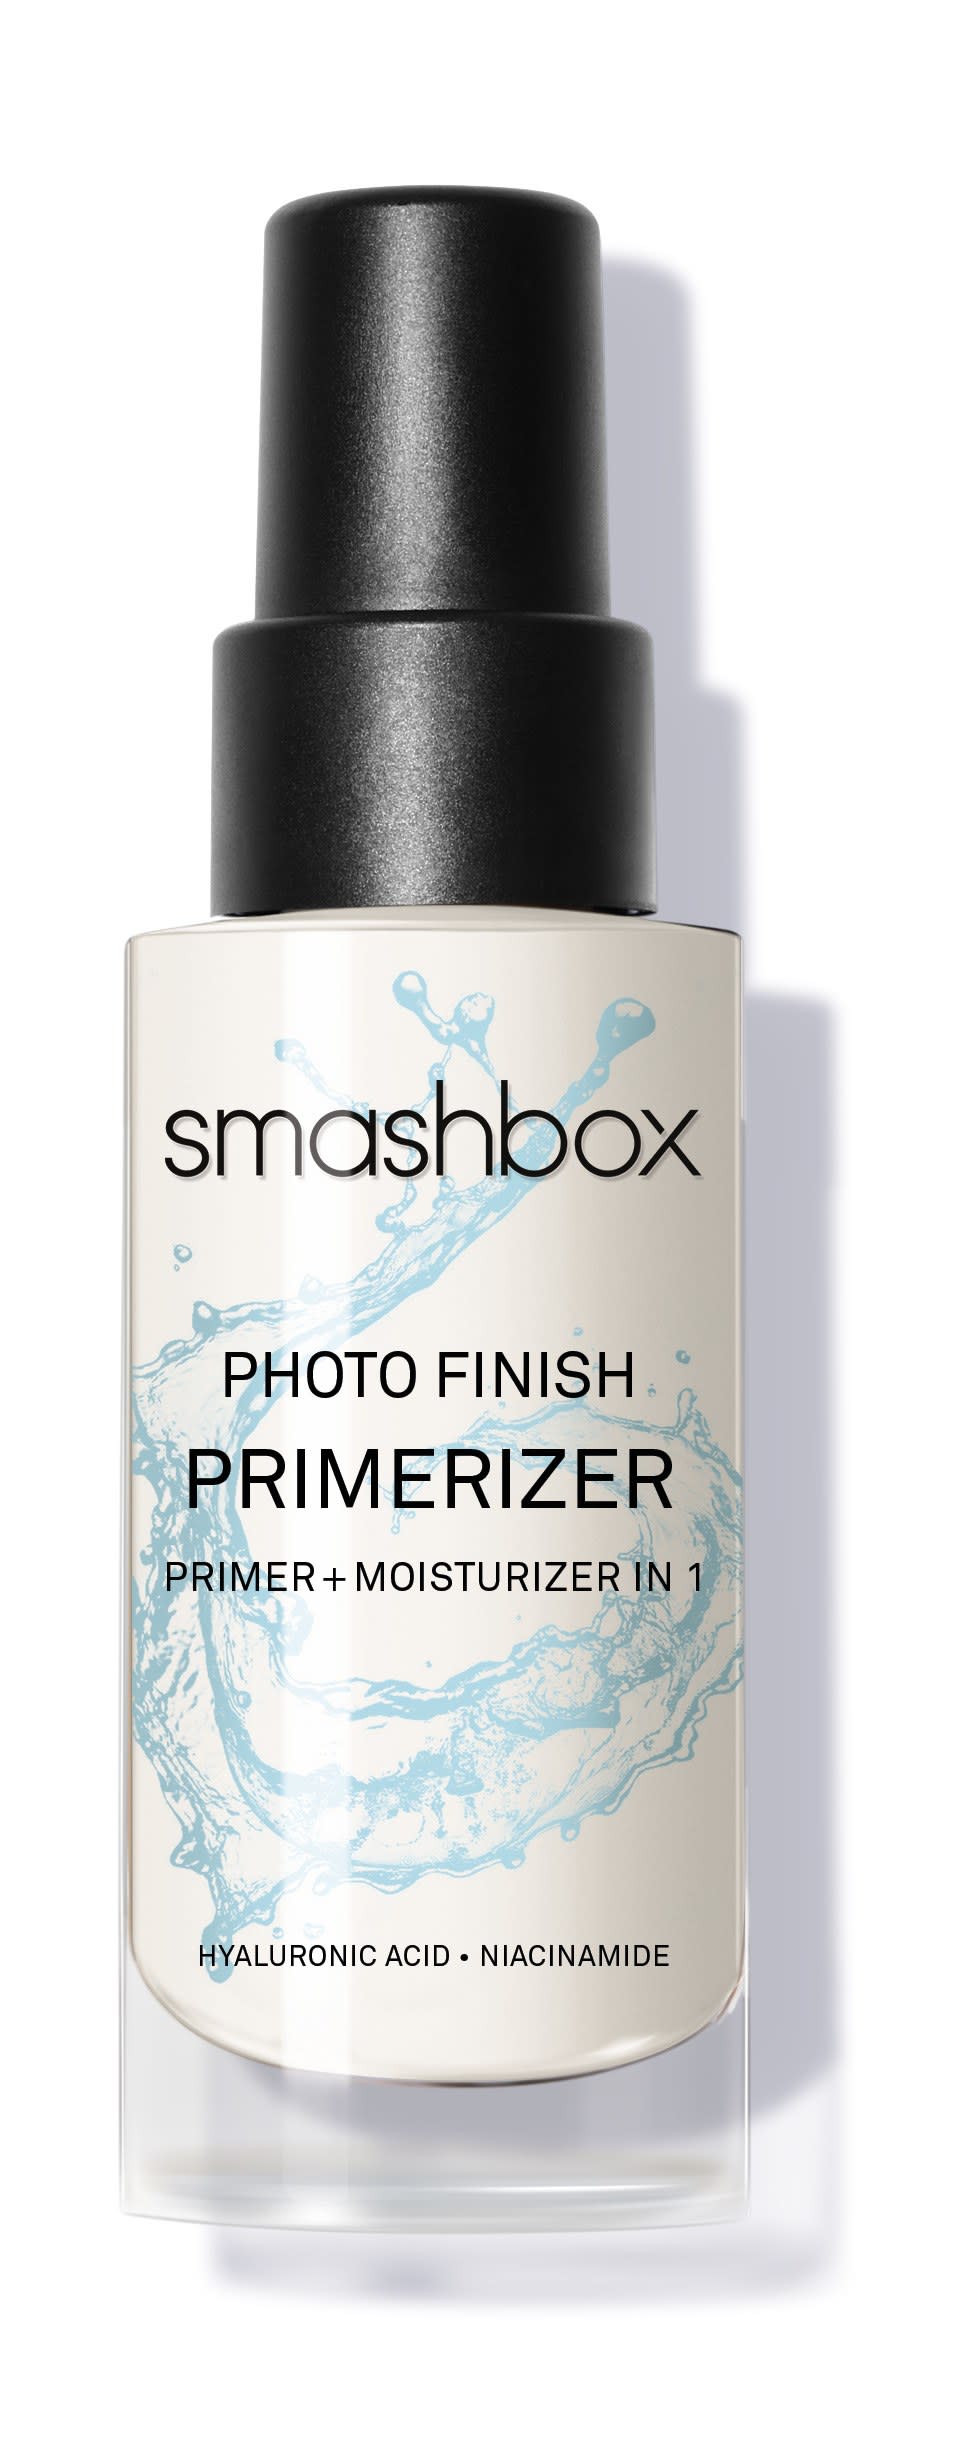 Smashbox Photo Finish Primerizer, $42